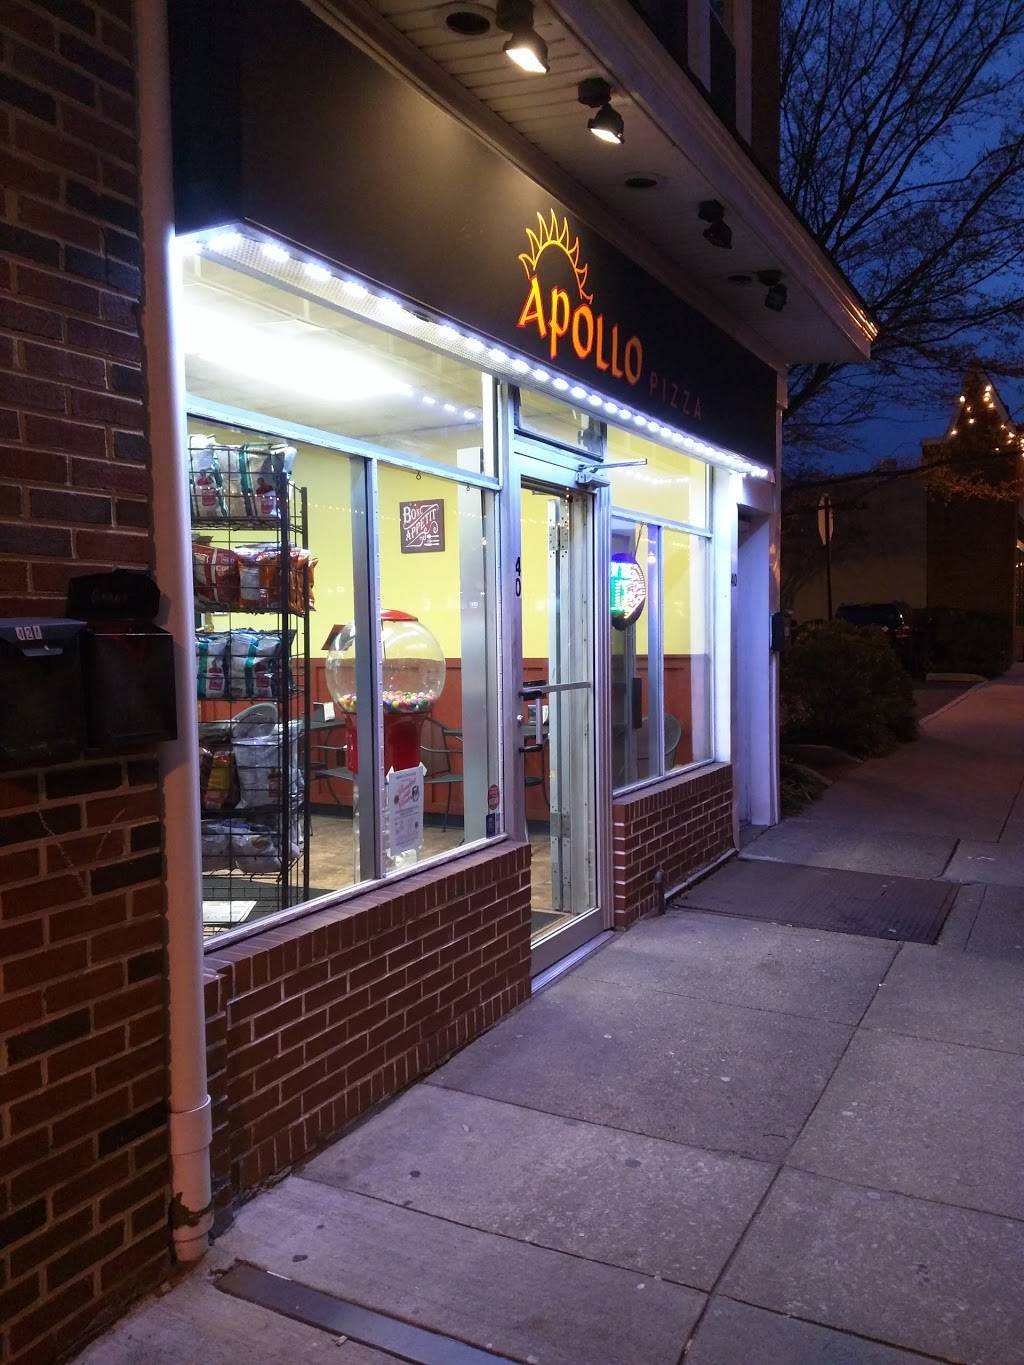 Apollo Pizza | restaurant | 40 E State St, Media, PA 19063, USA | 6105653883 OR +1 610-565-3883